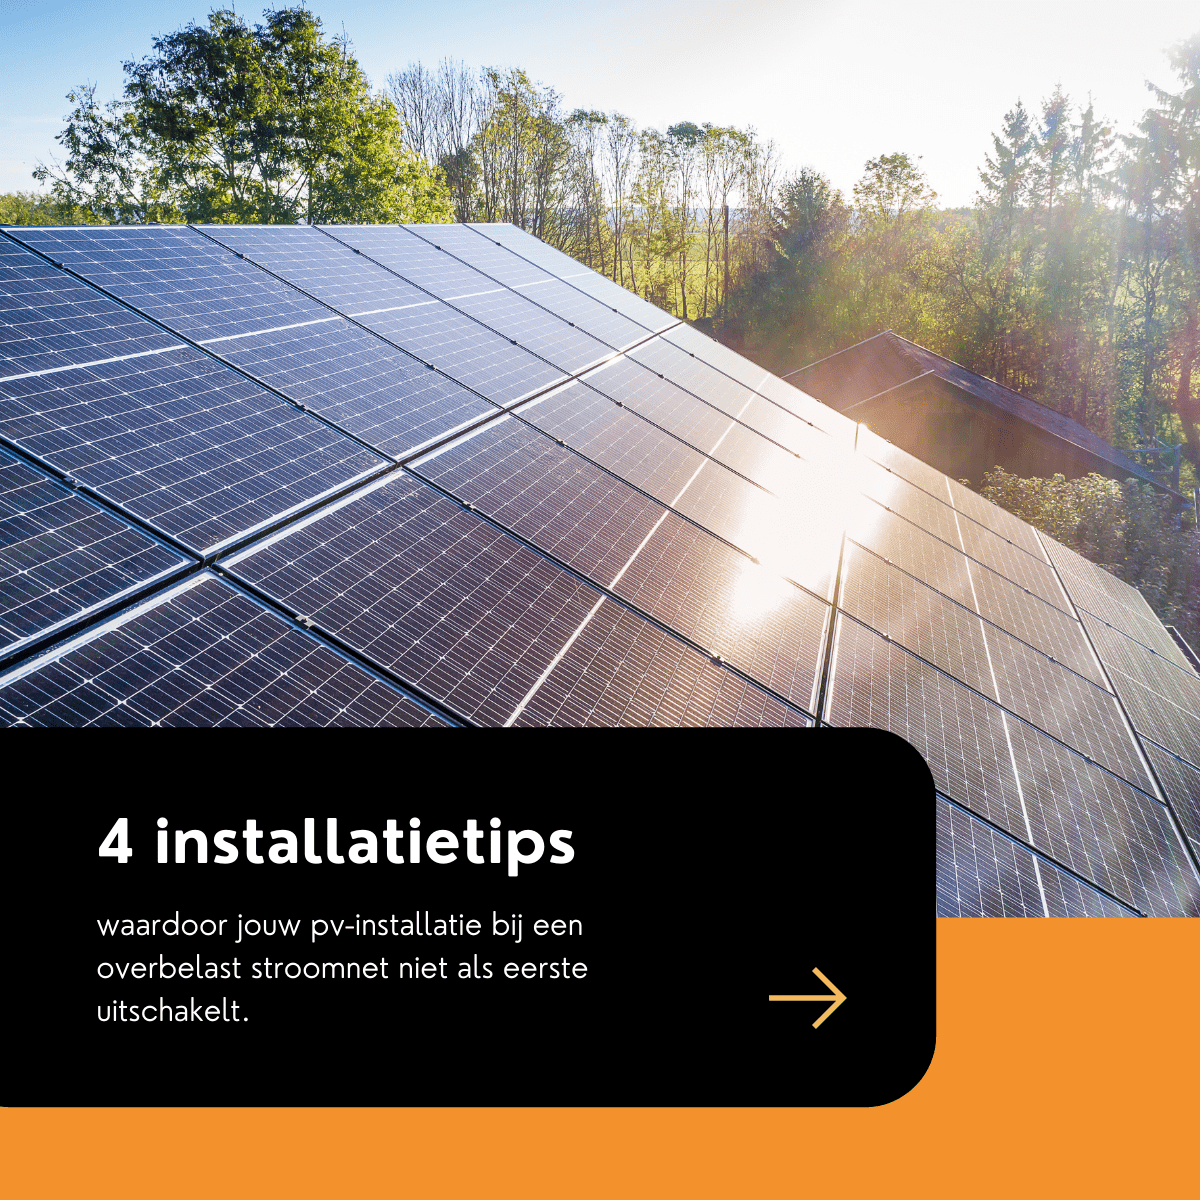 4 tips voor de installatie van zonnepanelen